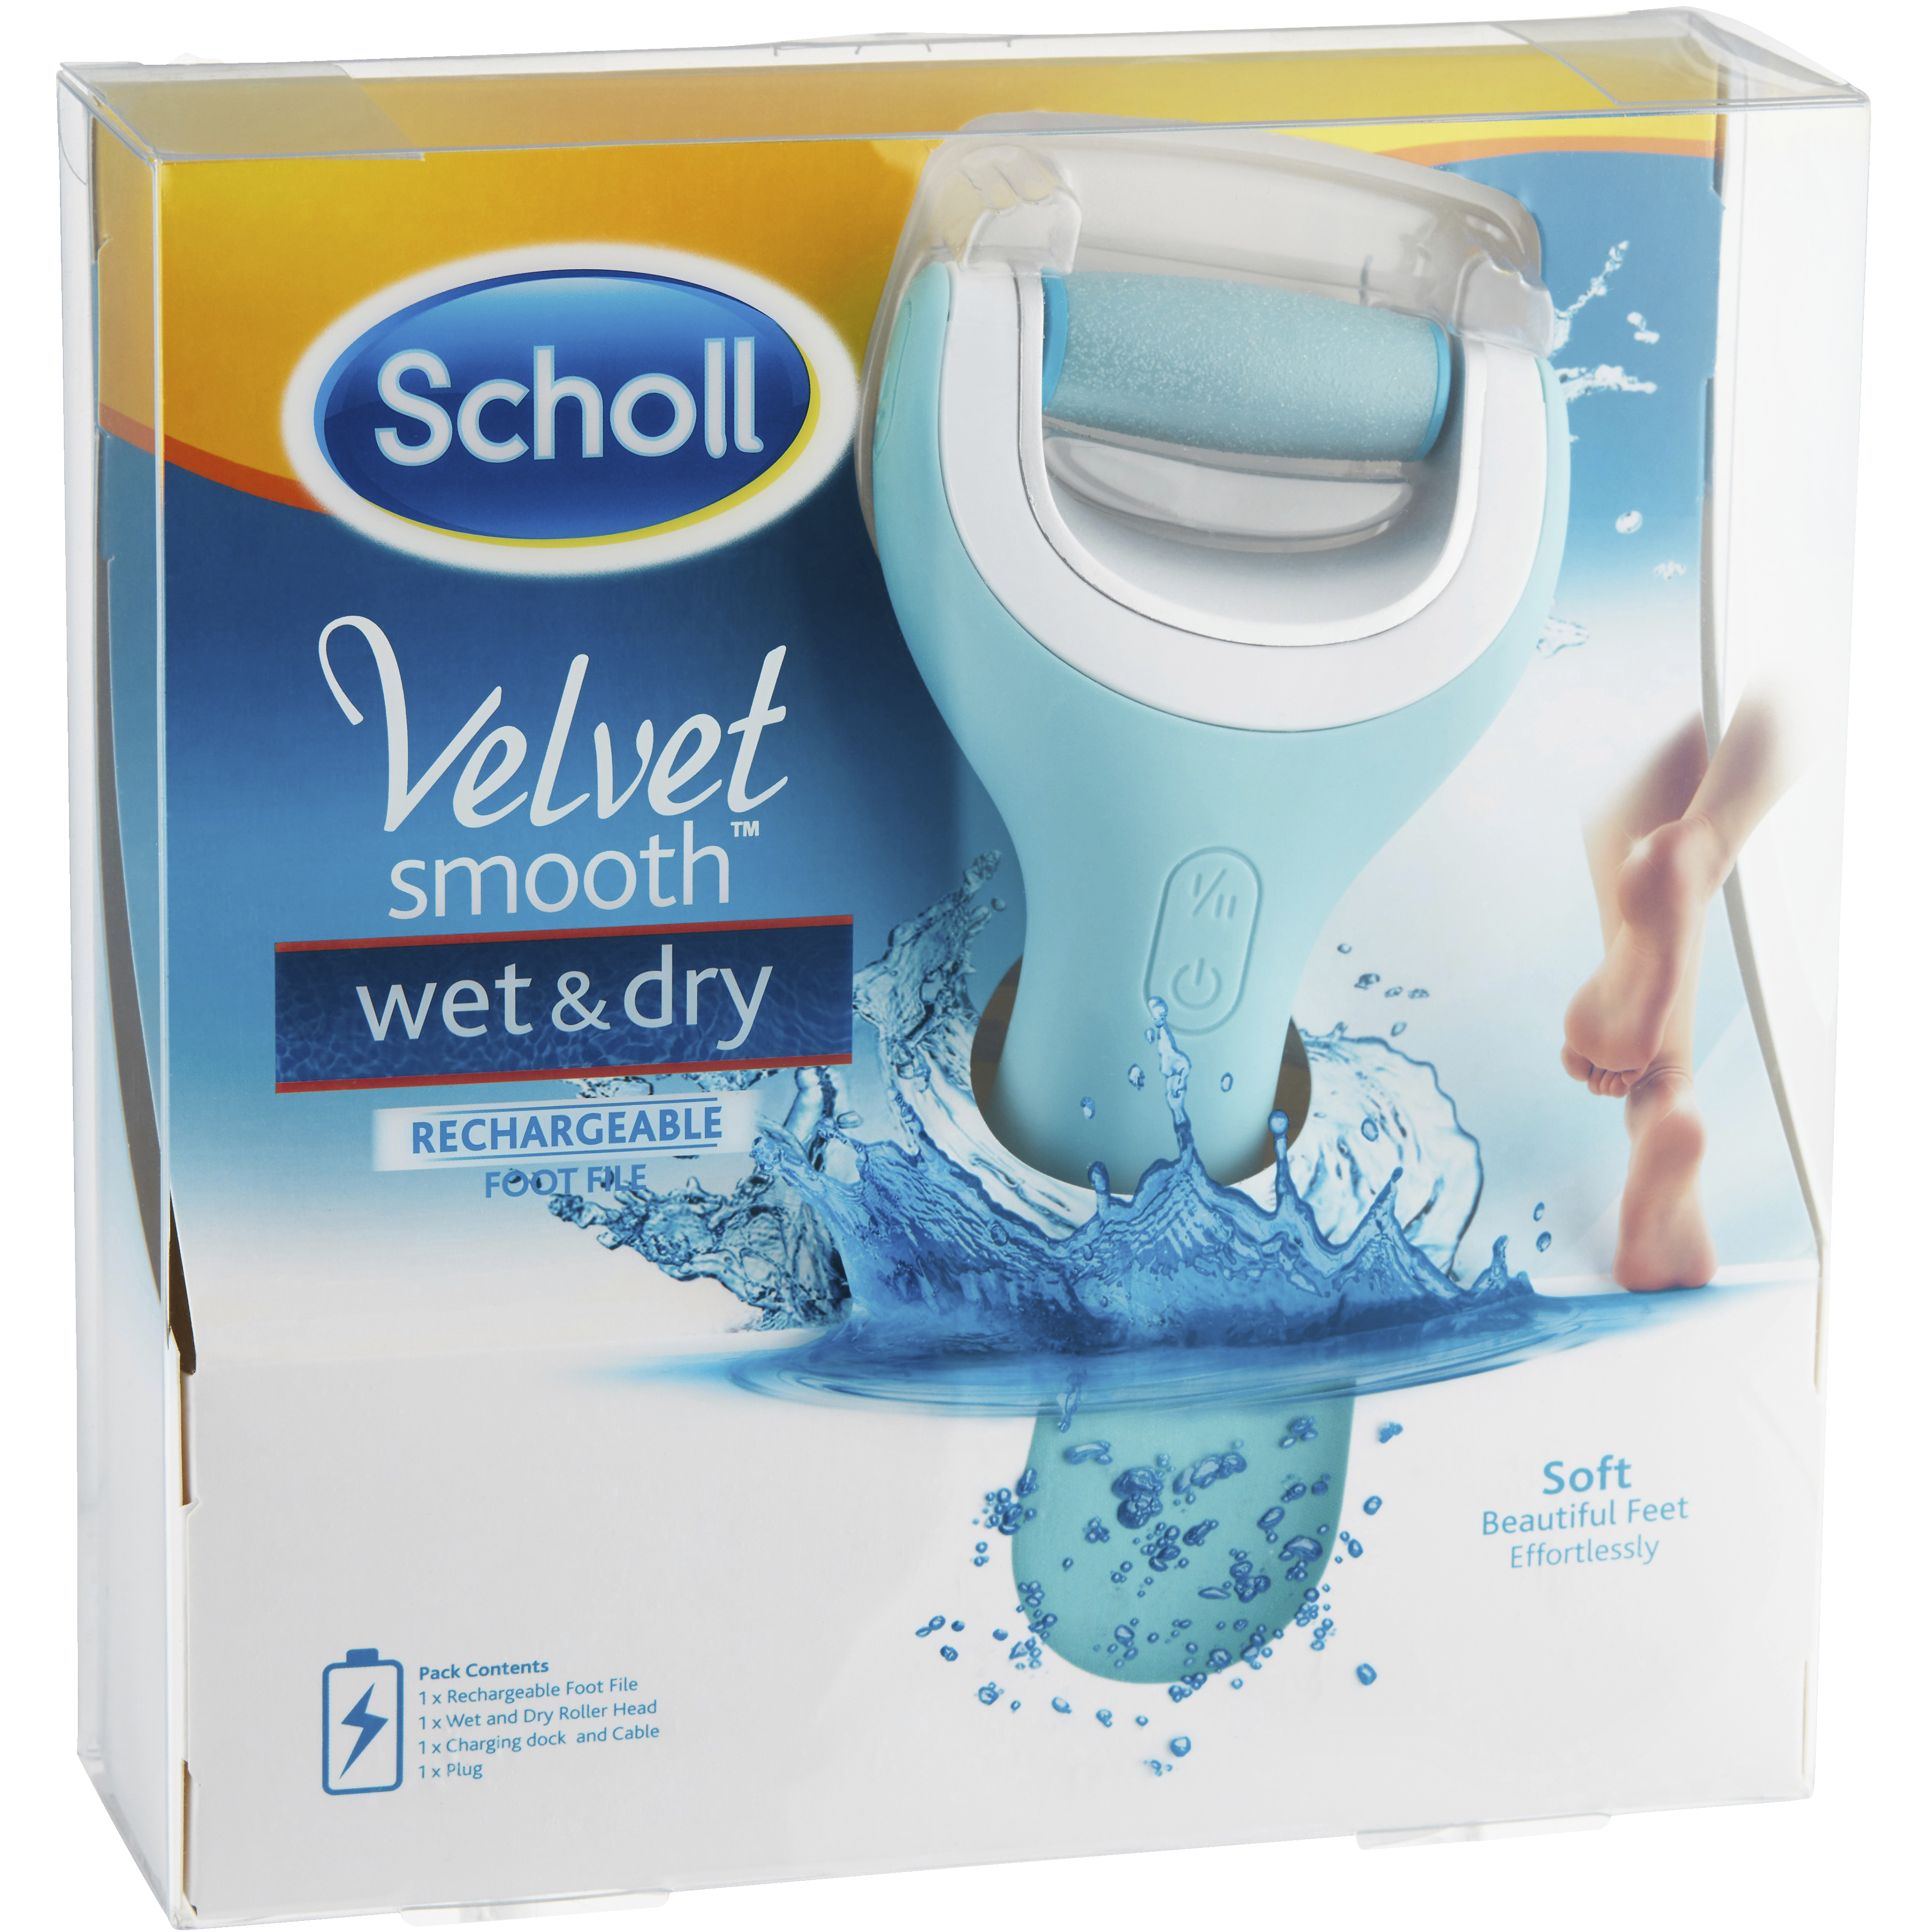 Scholl Velvet Smooth fotfil SCHOLL3021678 - Hälsa och ...